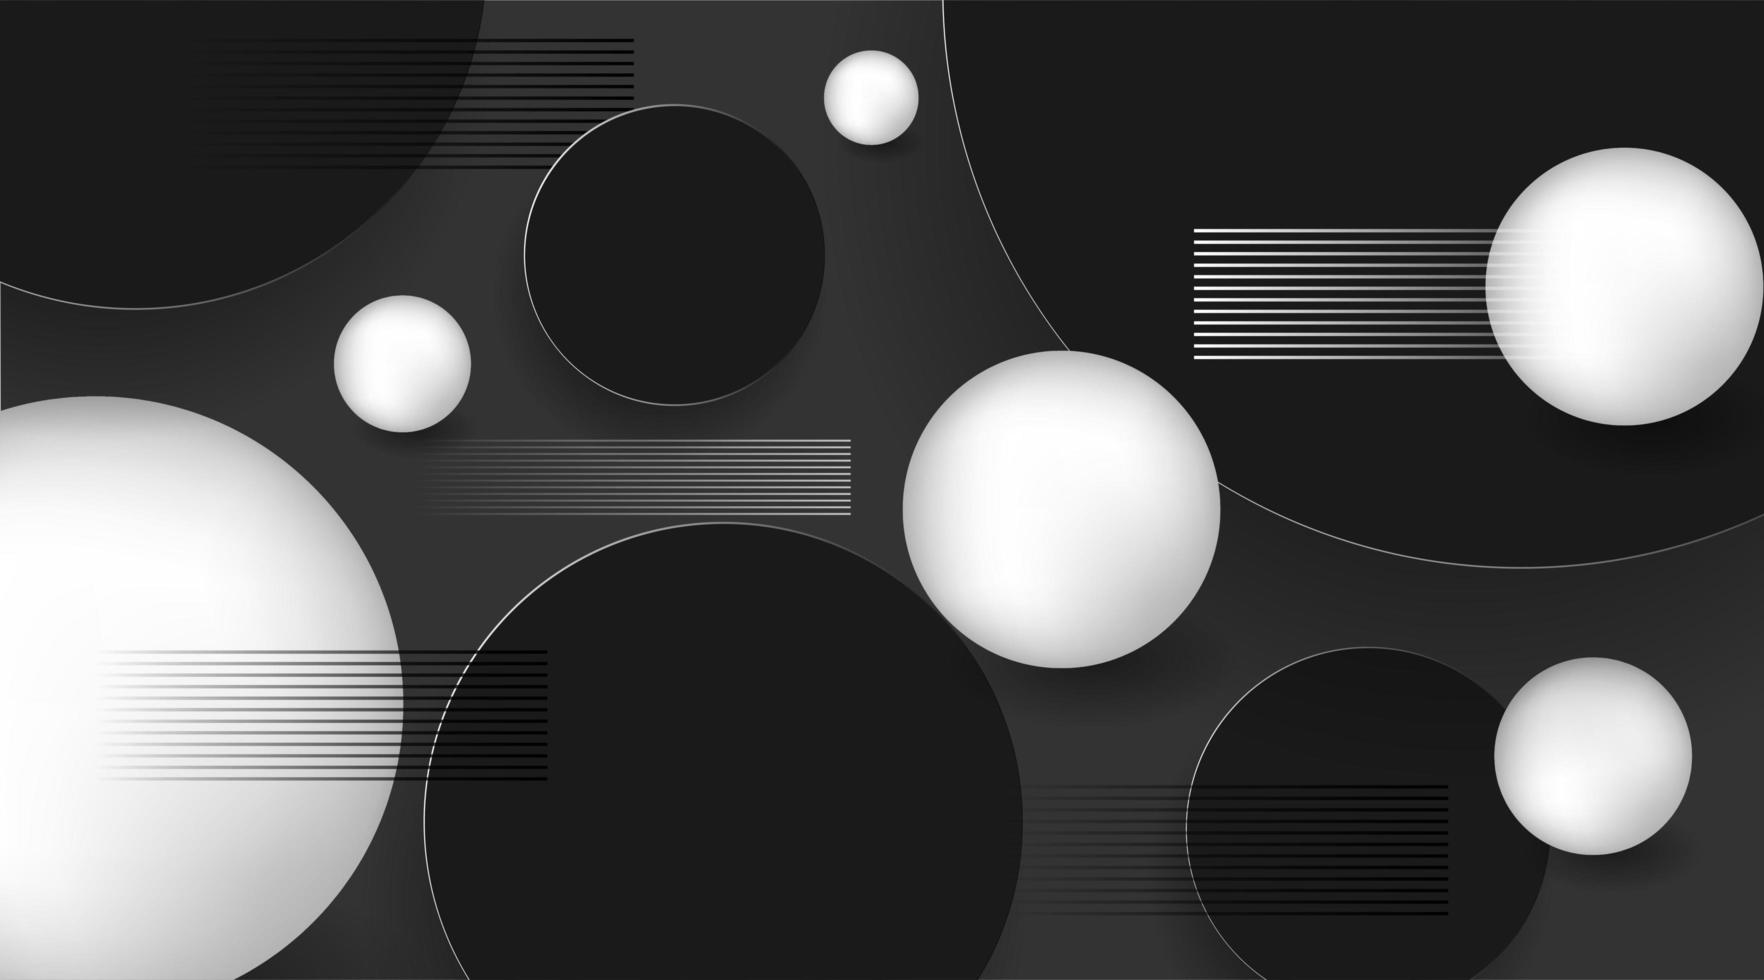 Bakgrund för boll 3d med cirklar och linjer. modern design stil vektorillustration vektor